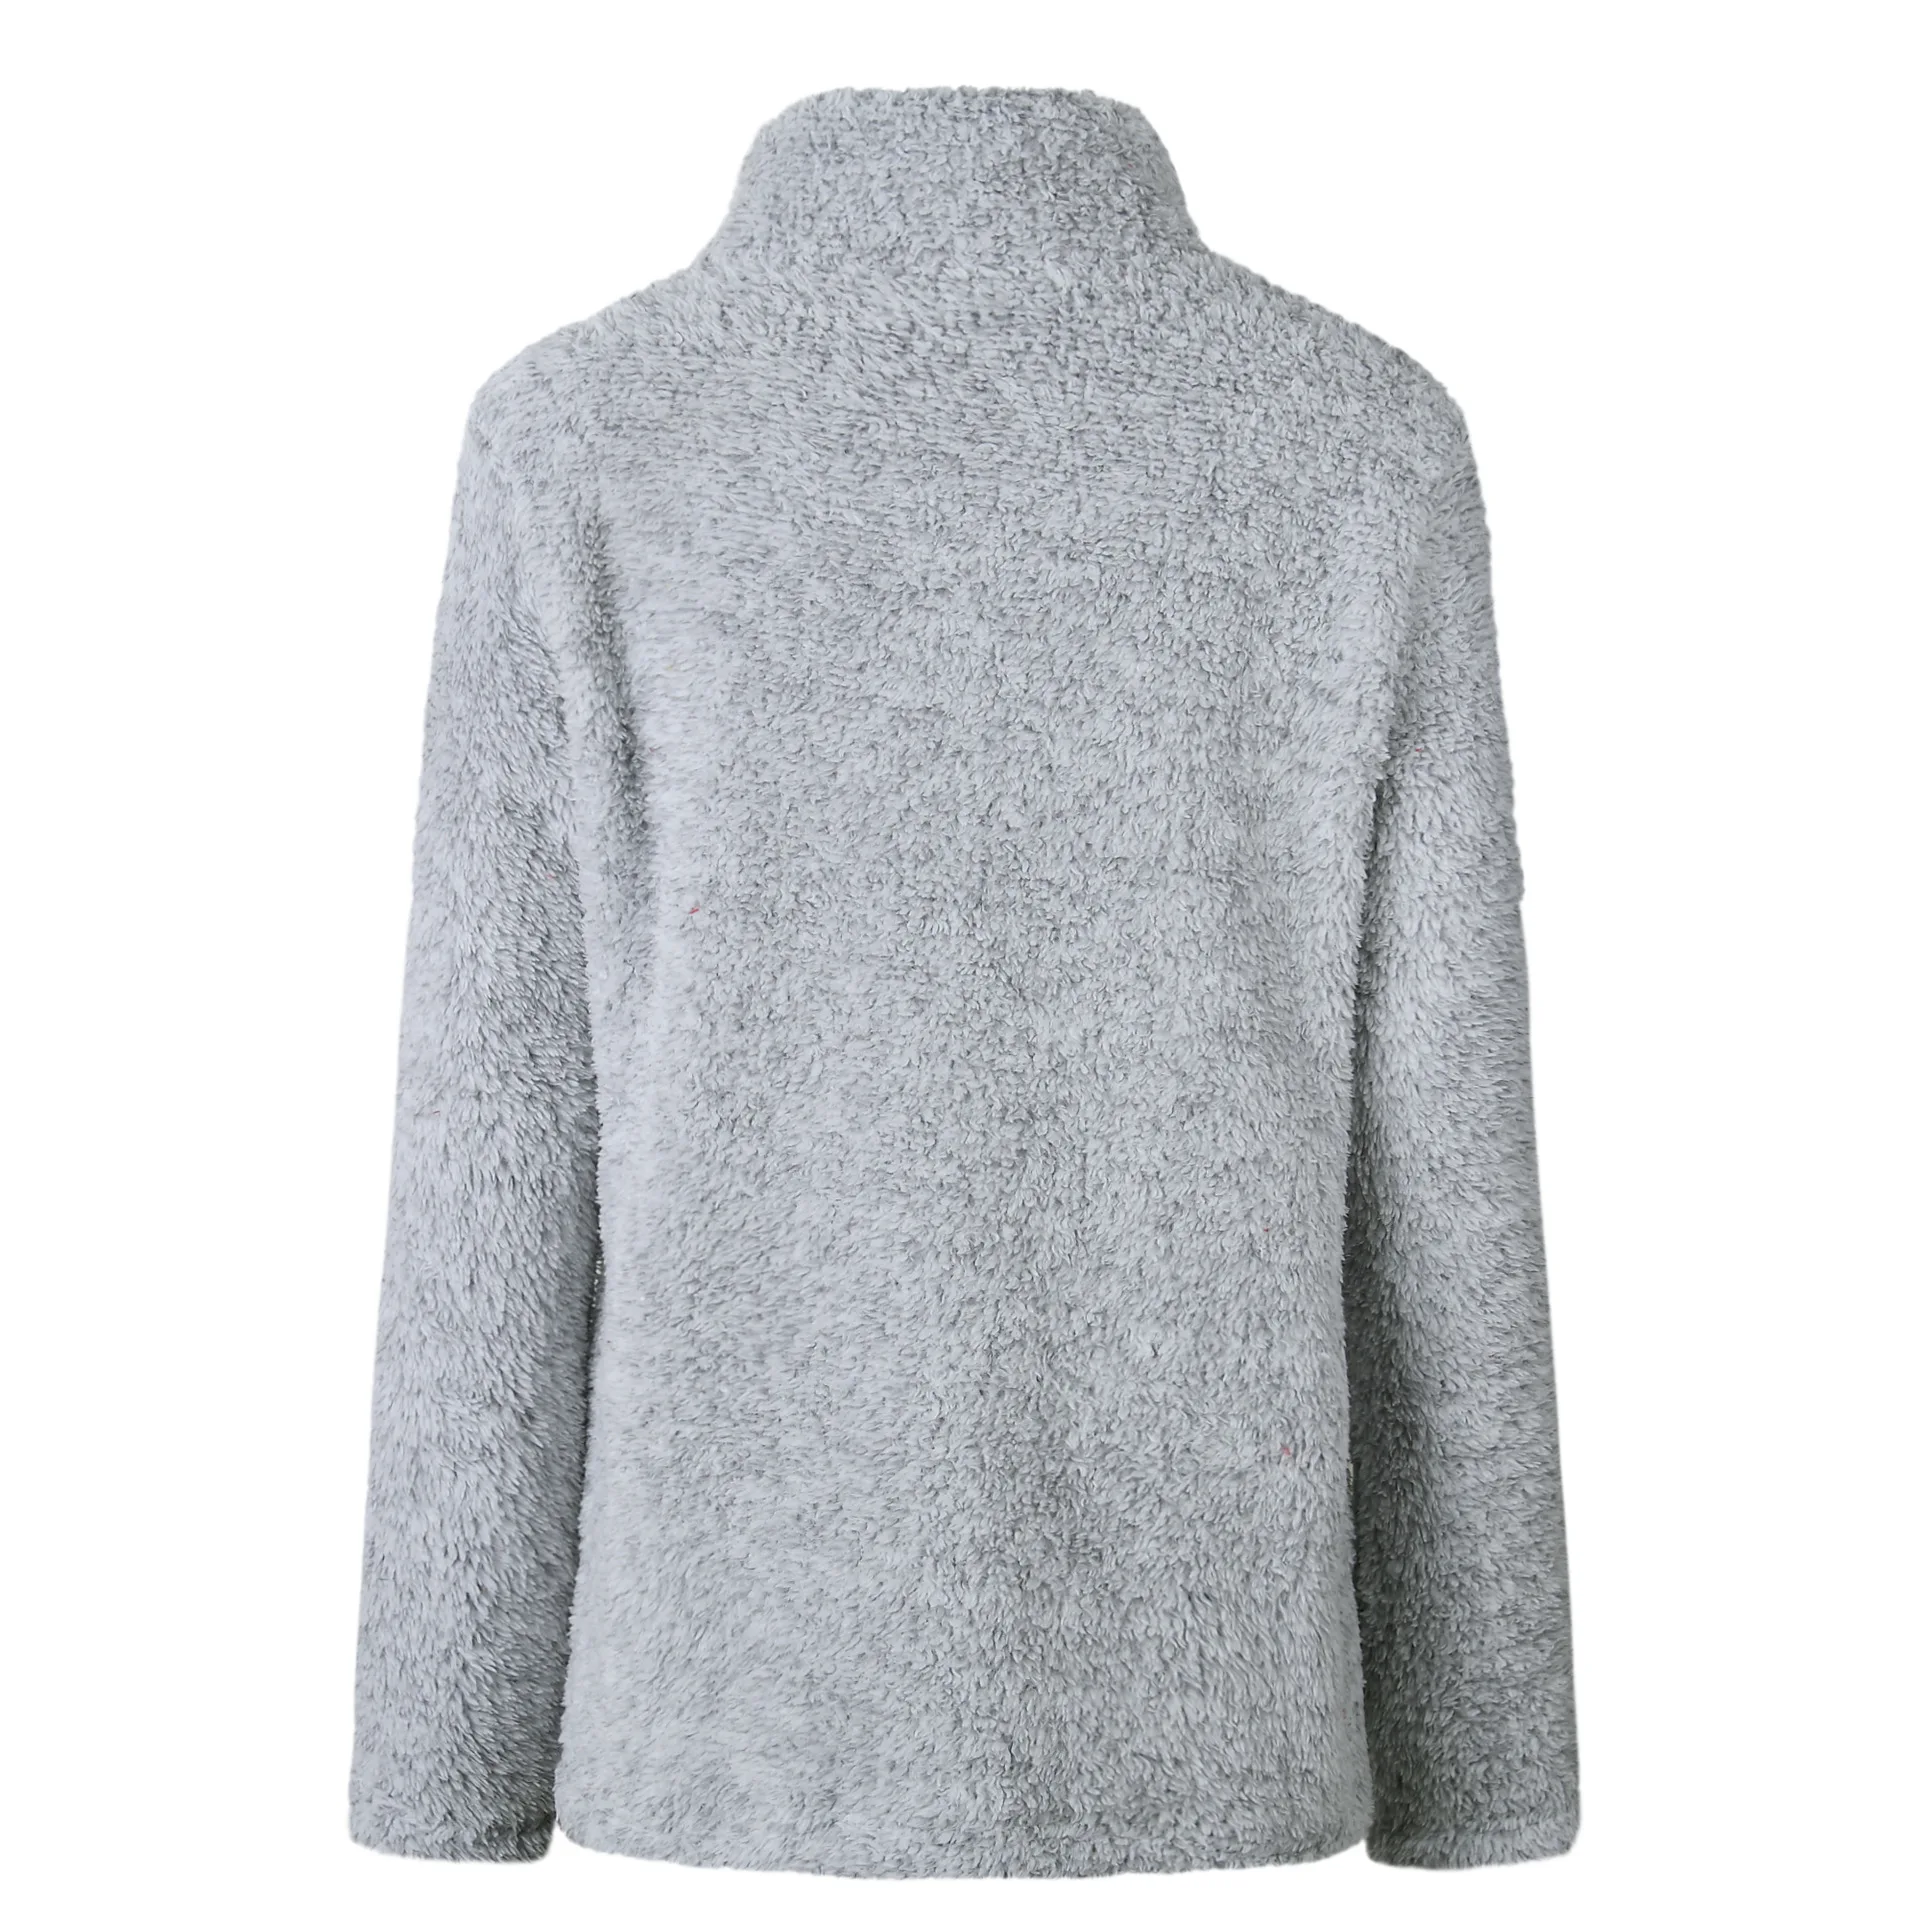 Модный свитер, женский осенне-зимний Повседневный свитер с v-образным вырезом, белый и черный цвета, Женский пуловер, вязаный Топ, Pull Femme Hiver